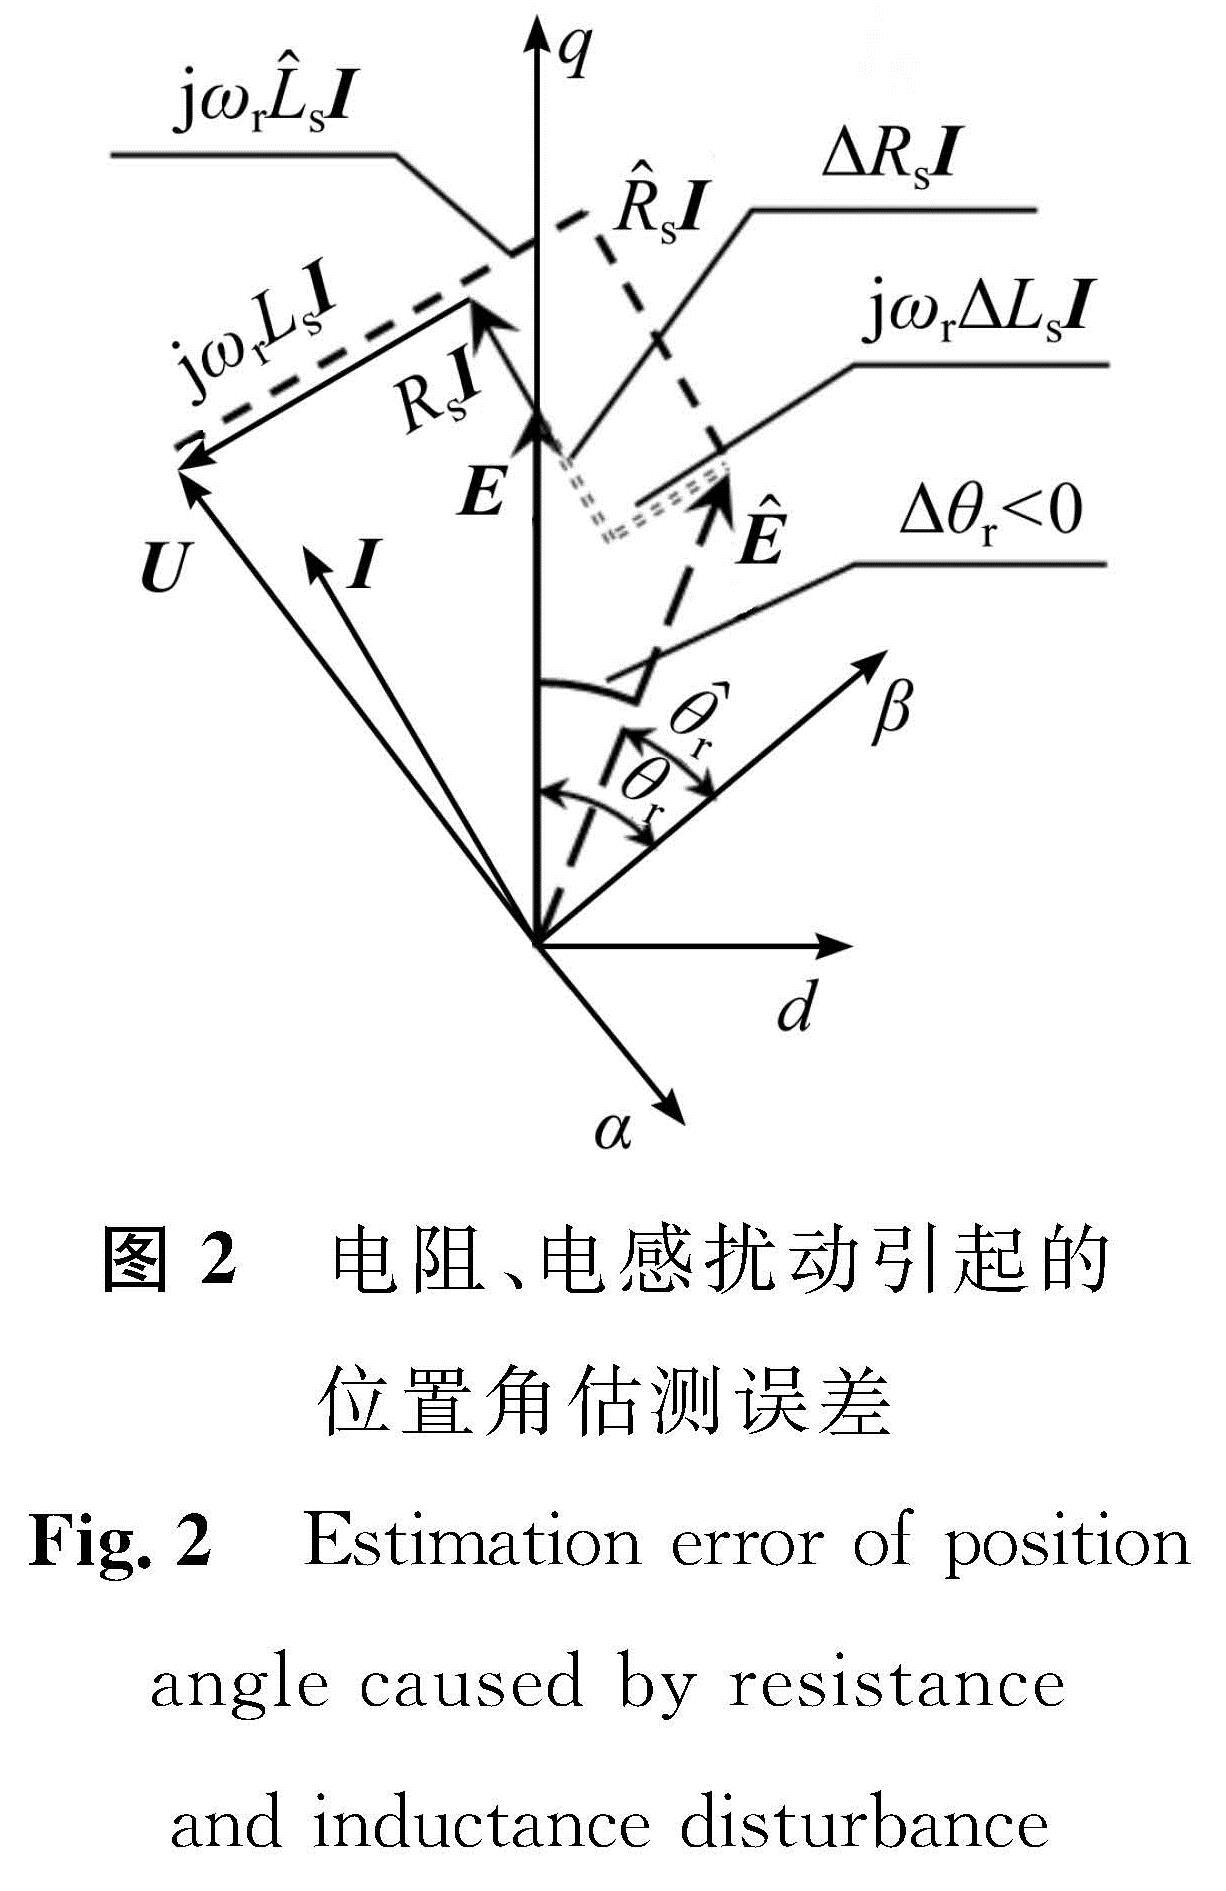 图2 电阻、电感扰动引起的位置角估测误差<br/>Fig.2 Estimation error of position angle caused by resistance and inductance disturbanc